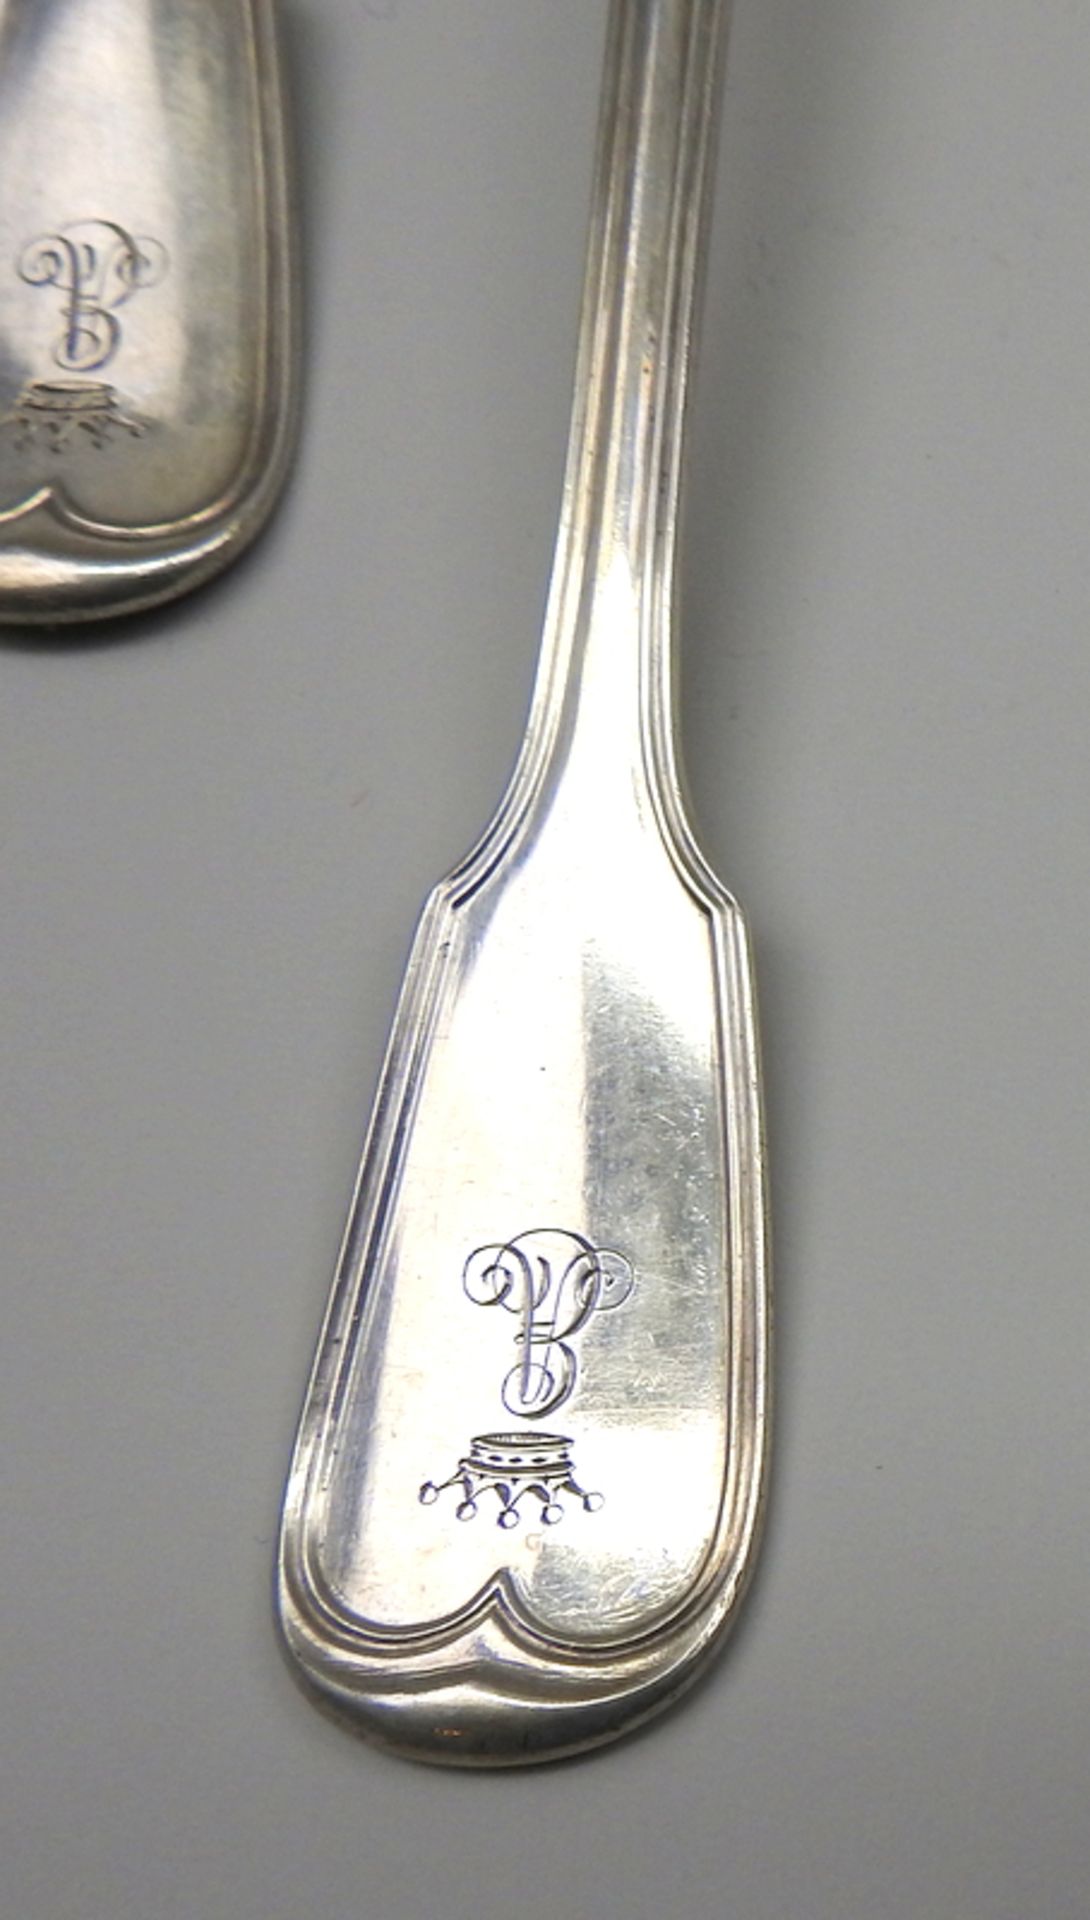 Silber-Besteck für vier Personen Silber 12 Lot, Gabeln und Löffel jeweils rückseiti - Image 2 of 3